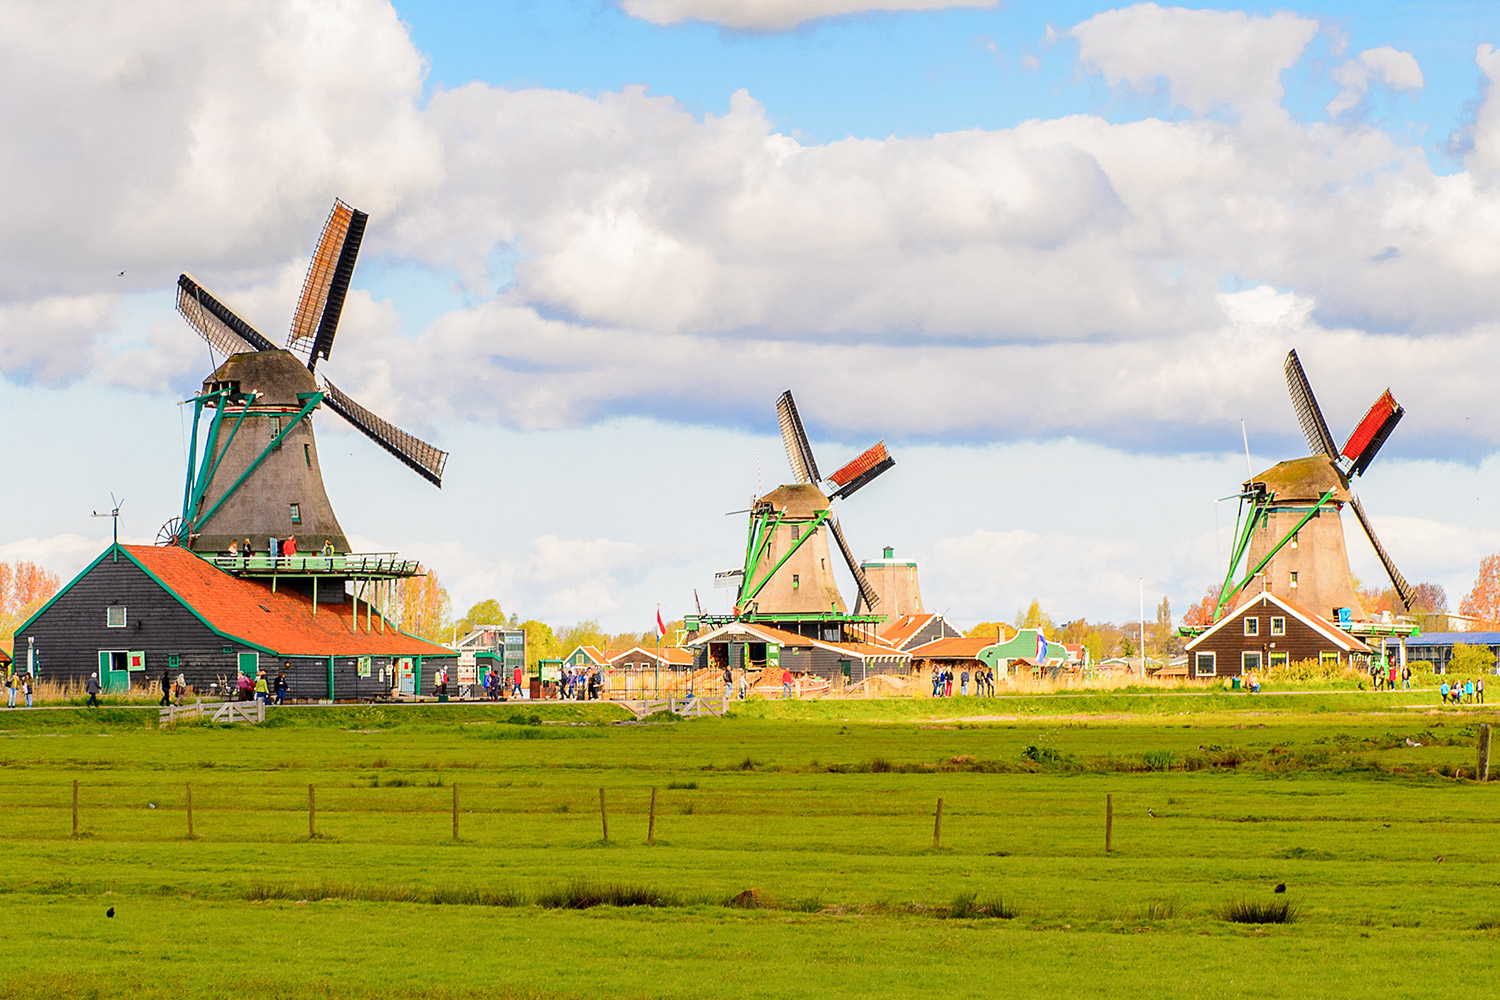 Windmills-of-Zaanse-Schans-quiet-village-in-Netherlands 422544037